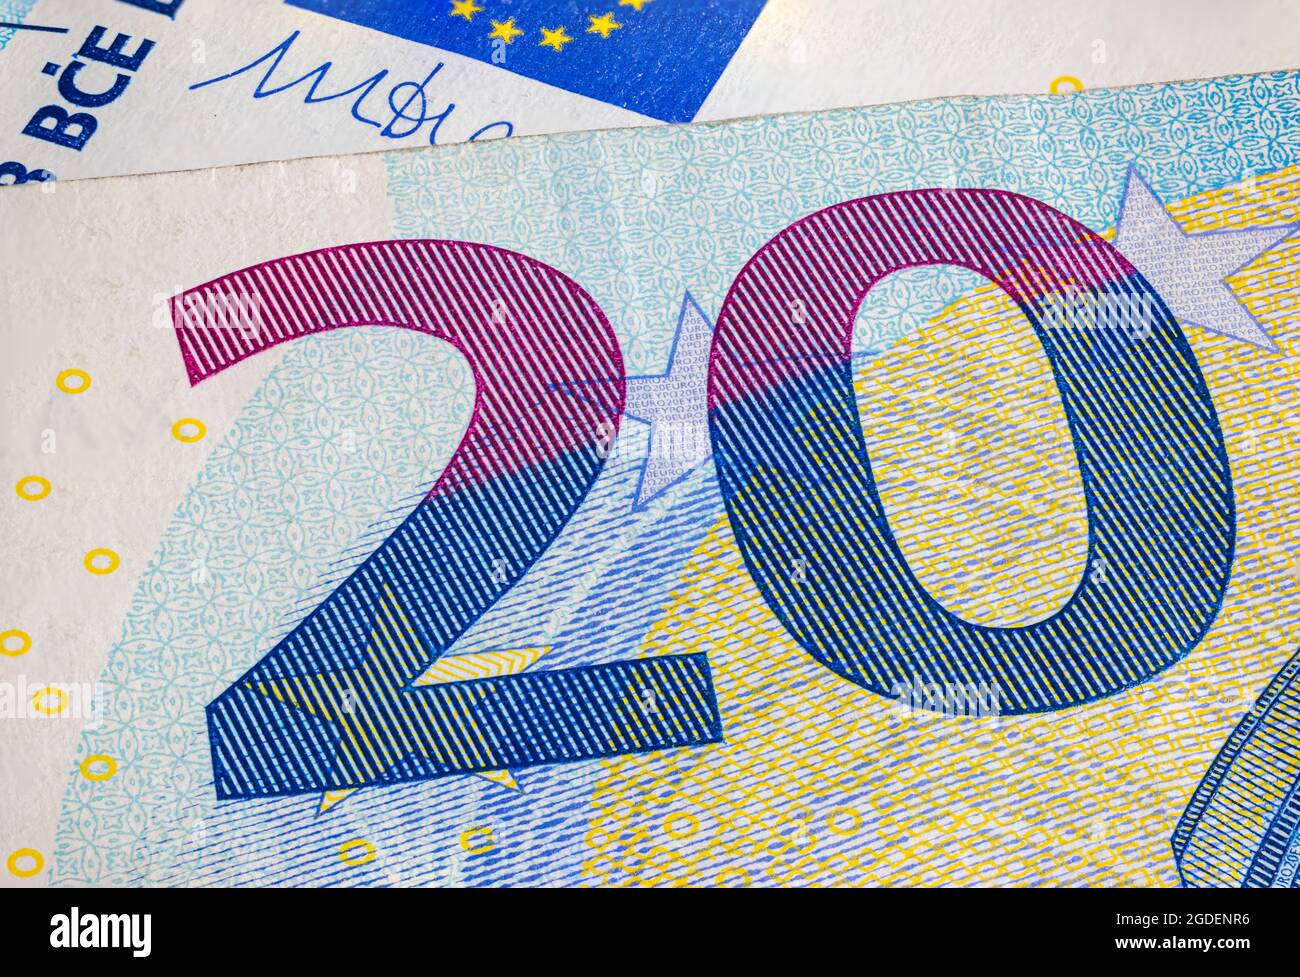 Vingt Euro morceau de billet macro. Gros plan d'une partie de la nouvelle note de vingt euros. Argent de l'Union européenne. Devise européenne. Imprimé intaglio Banque D'Images